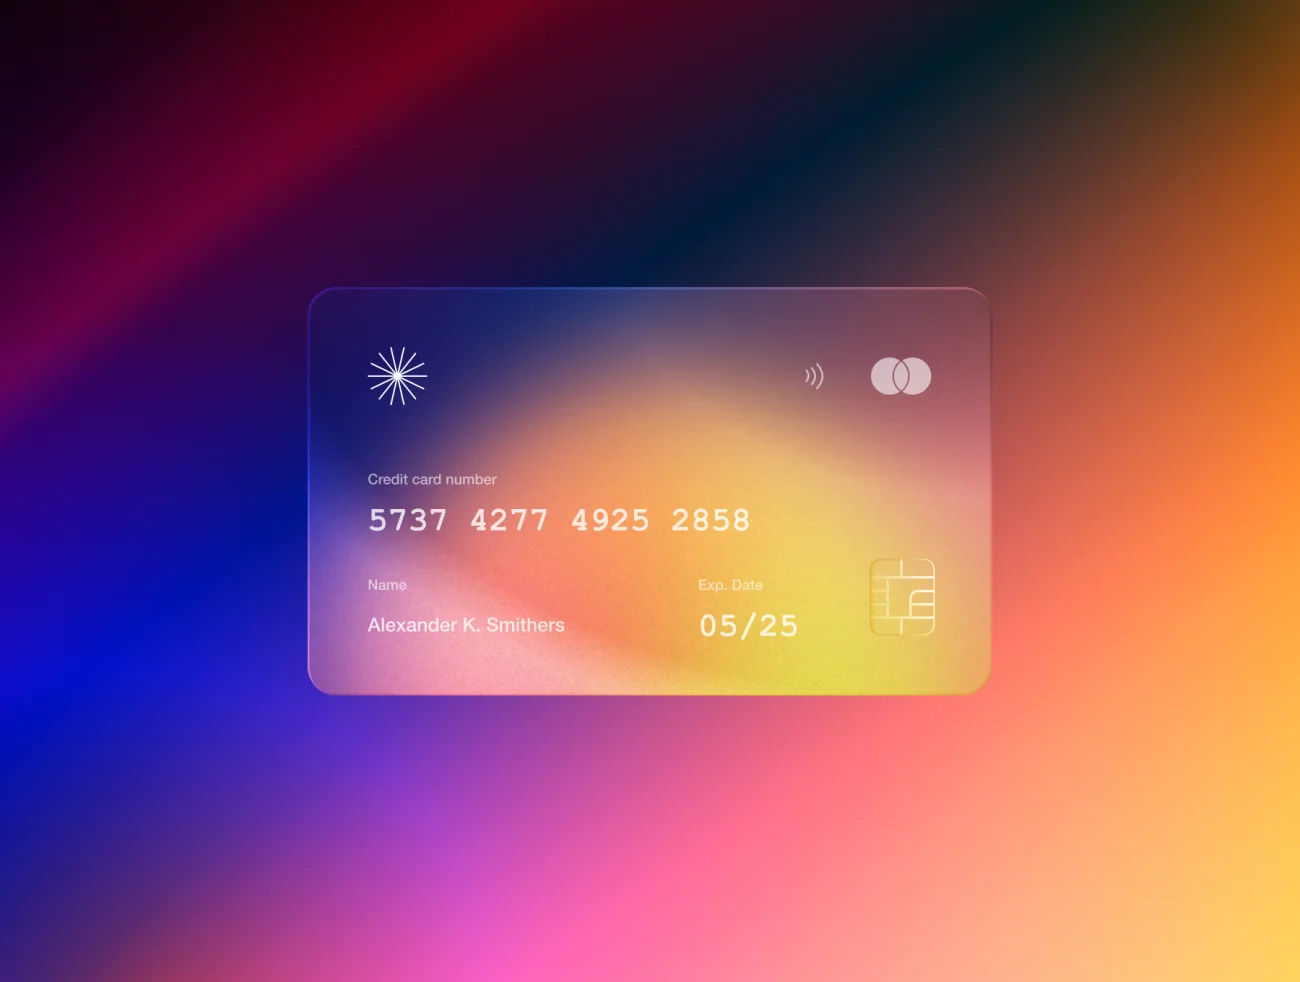 10个高质量3D金属信用卡模型样机素材 3D Metal Credit Card Mockups – Fintech & SaaS插图7